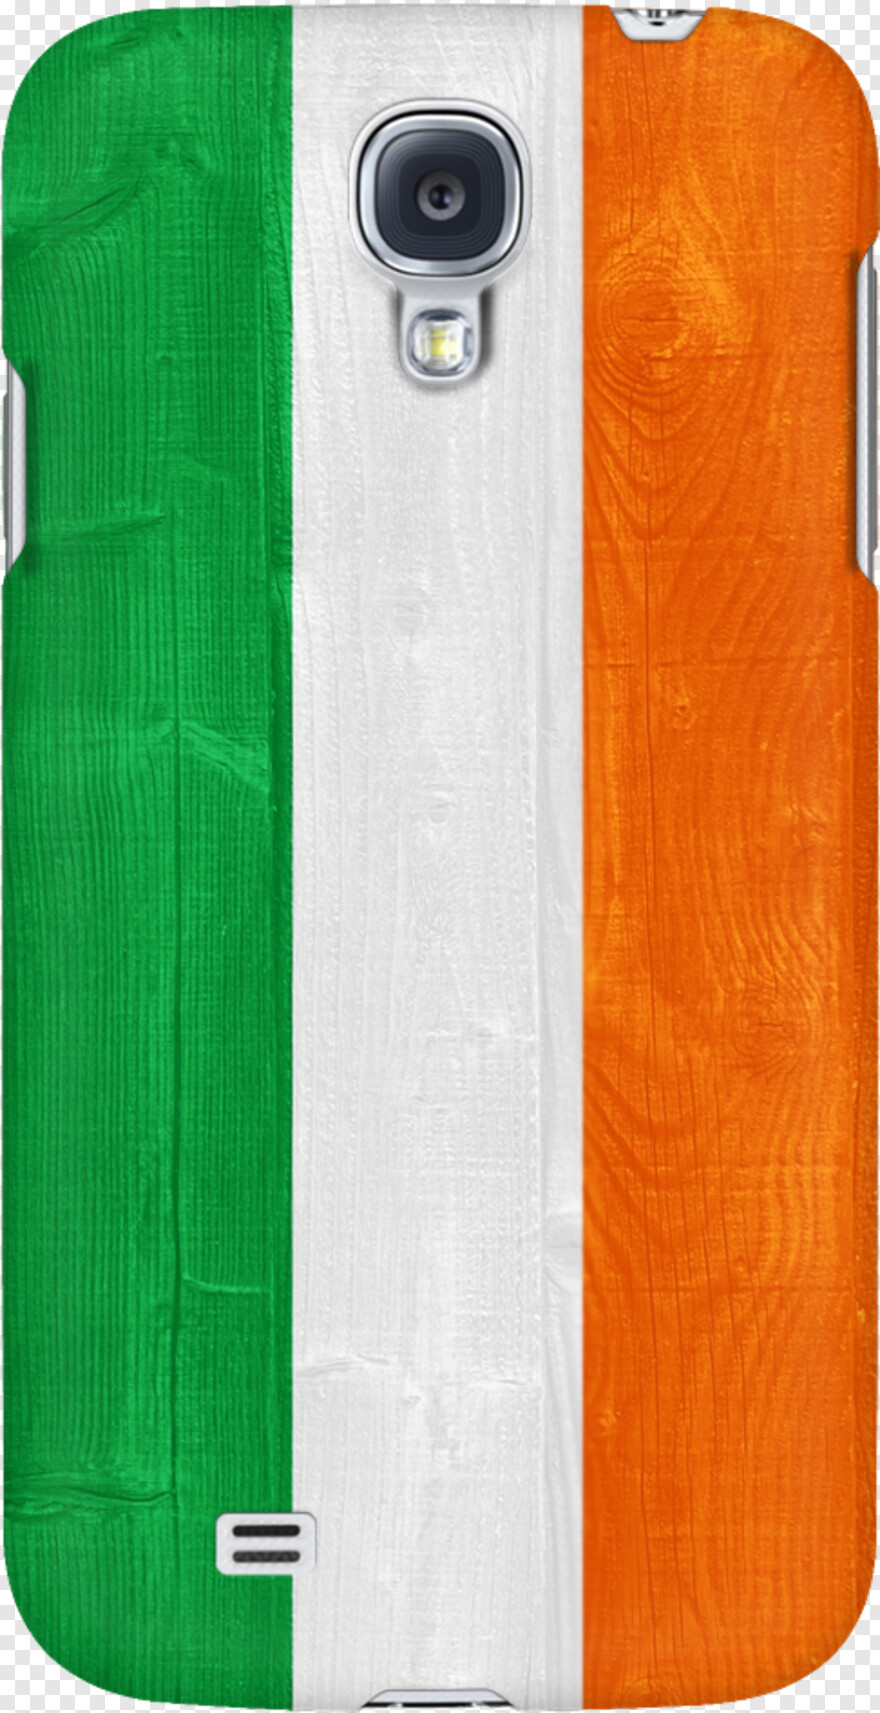 irish-flag # 1053935